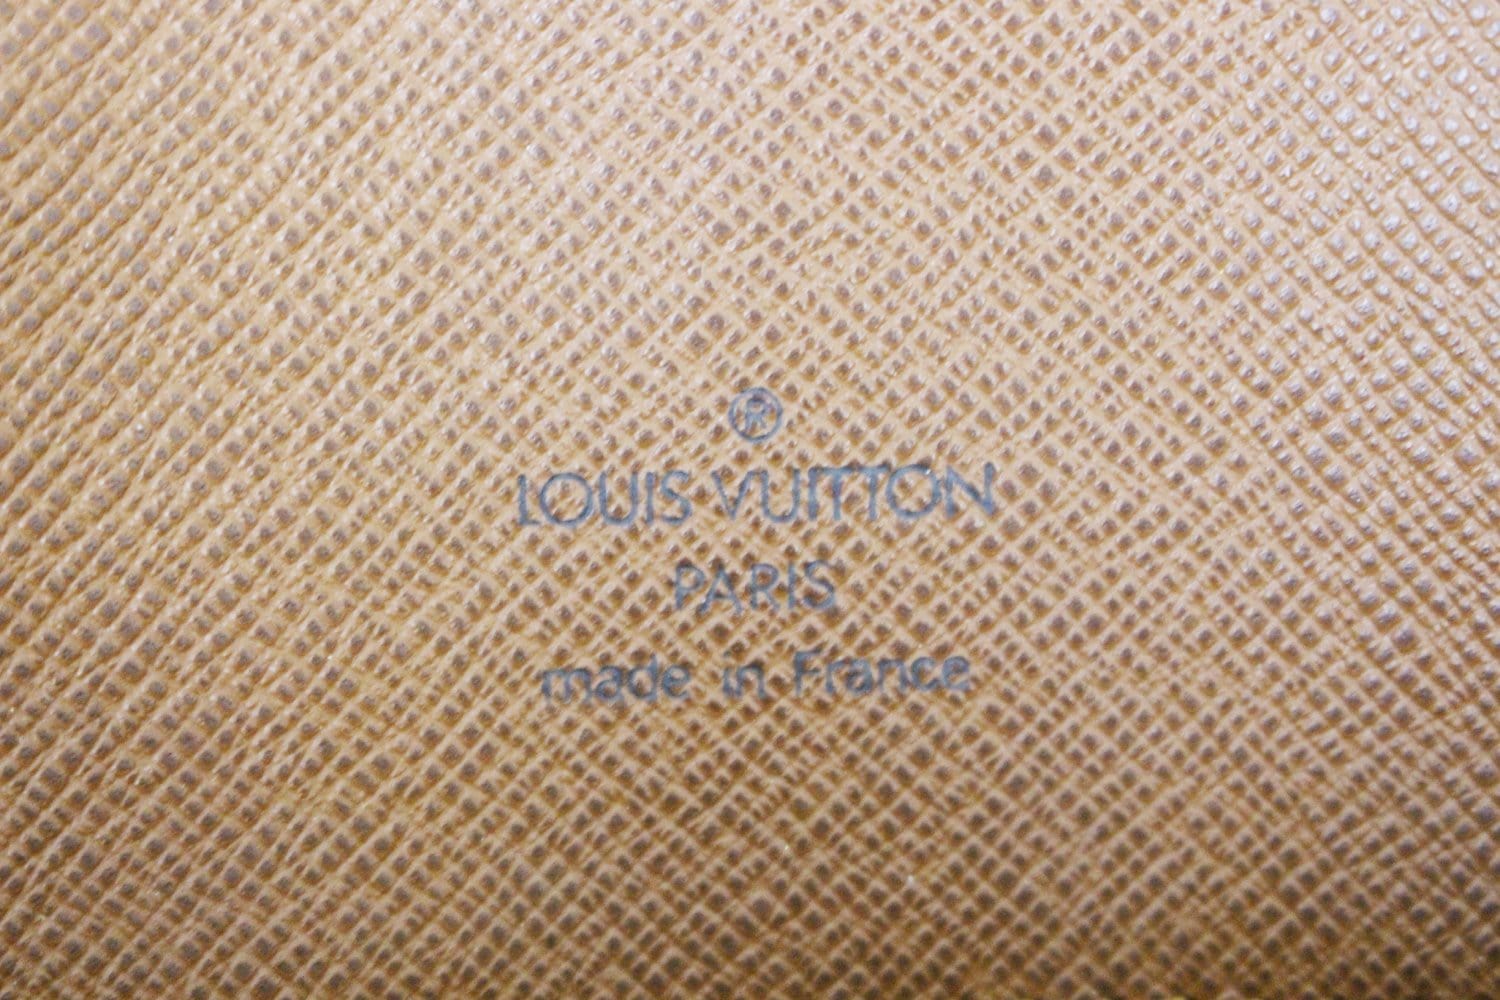 Monogram Musette Tango Short Strap Louis Vuitton – LAB